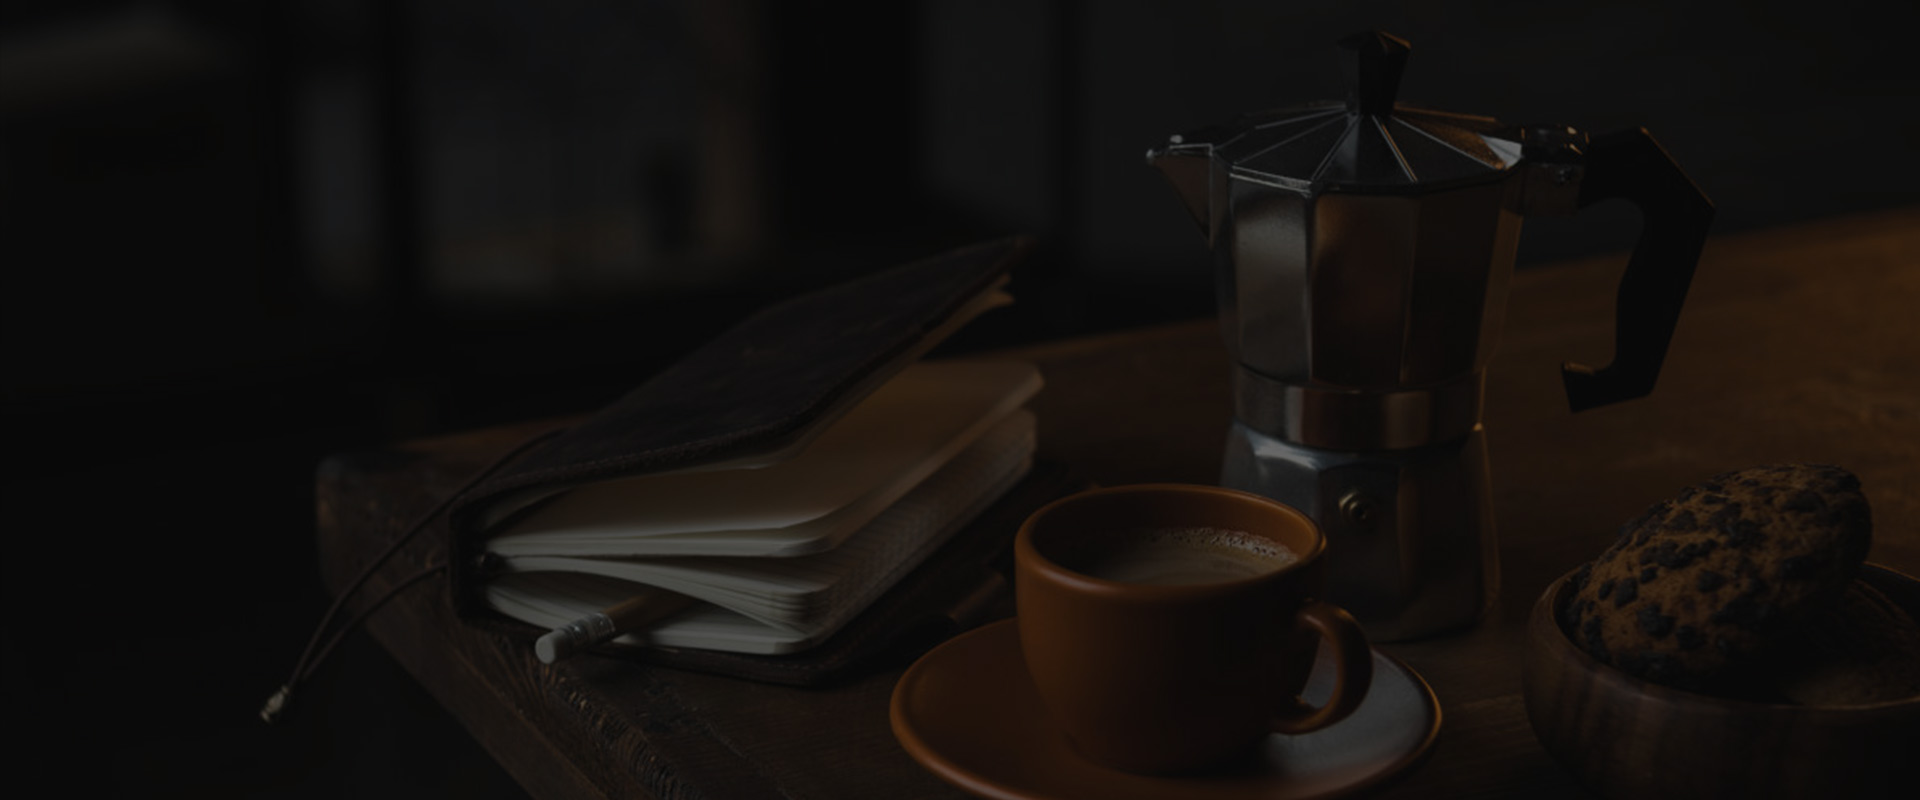 Kommerzielle Druckknopf Automatische Espresso&Americano Kaffeemaschine